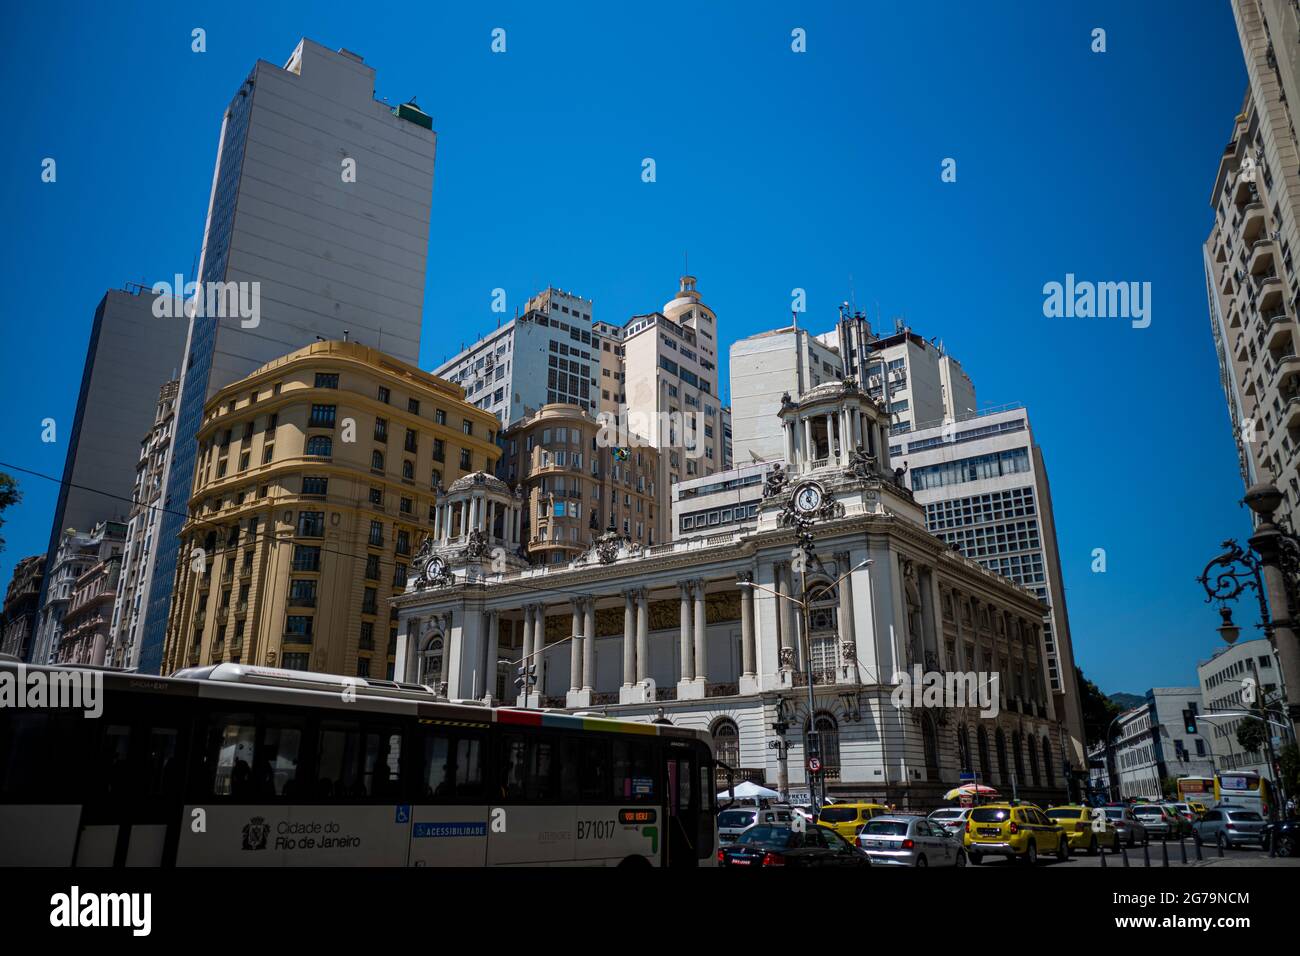 Municipio di Rio de Janeiro - Cinêlandia (Praça da Cinelandia). Situato nel centro della città, è uno degli edifici più fotografati di Rio de Janeiro, Brasile. Costruito all'inizio del XX secolo, considerato uno dei teatri più belli e importanti del paese. Foto Stock